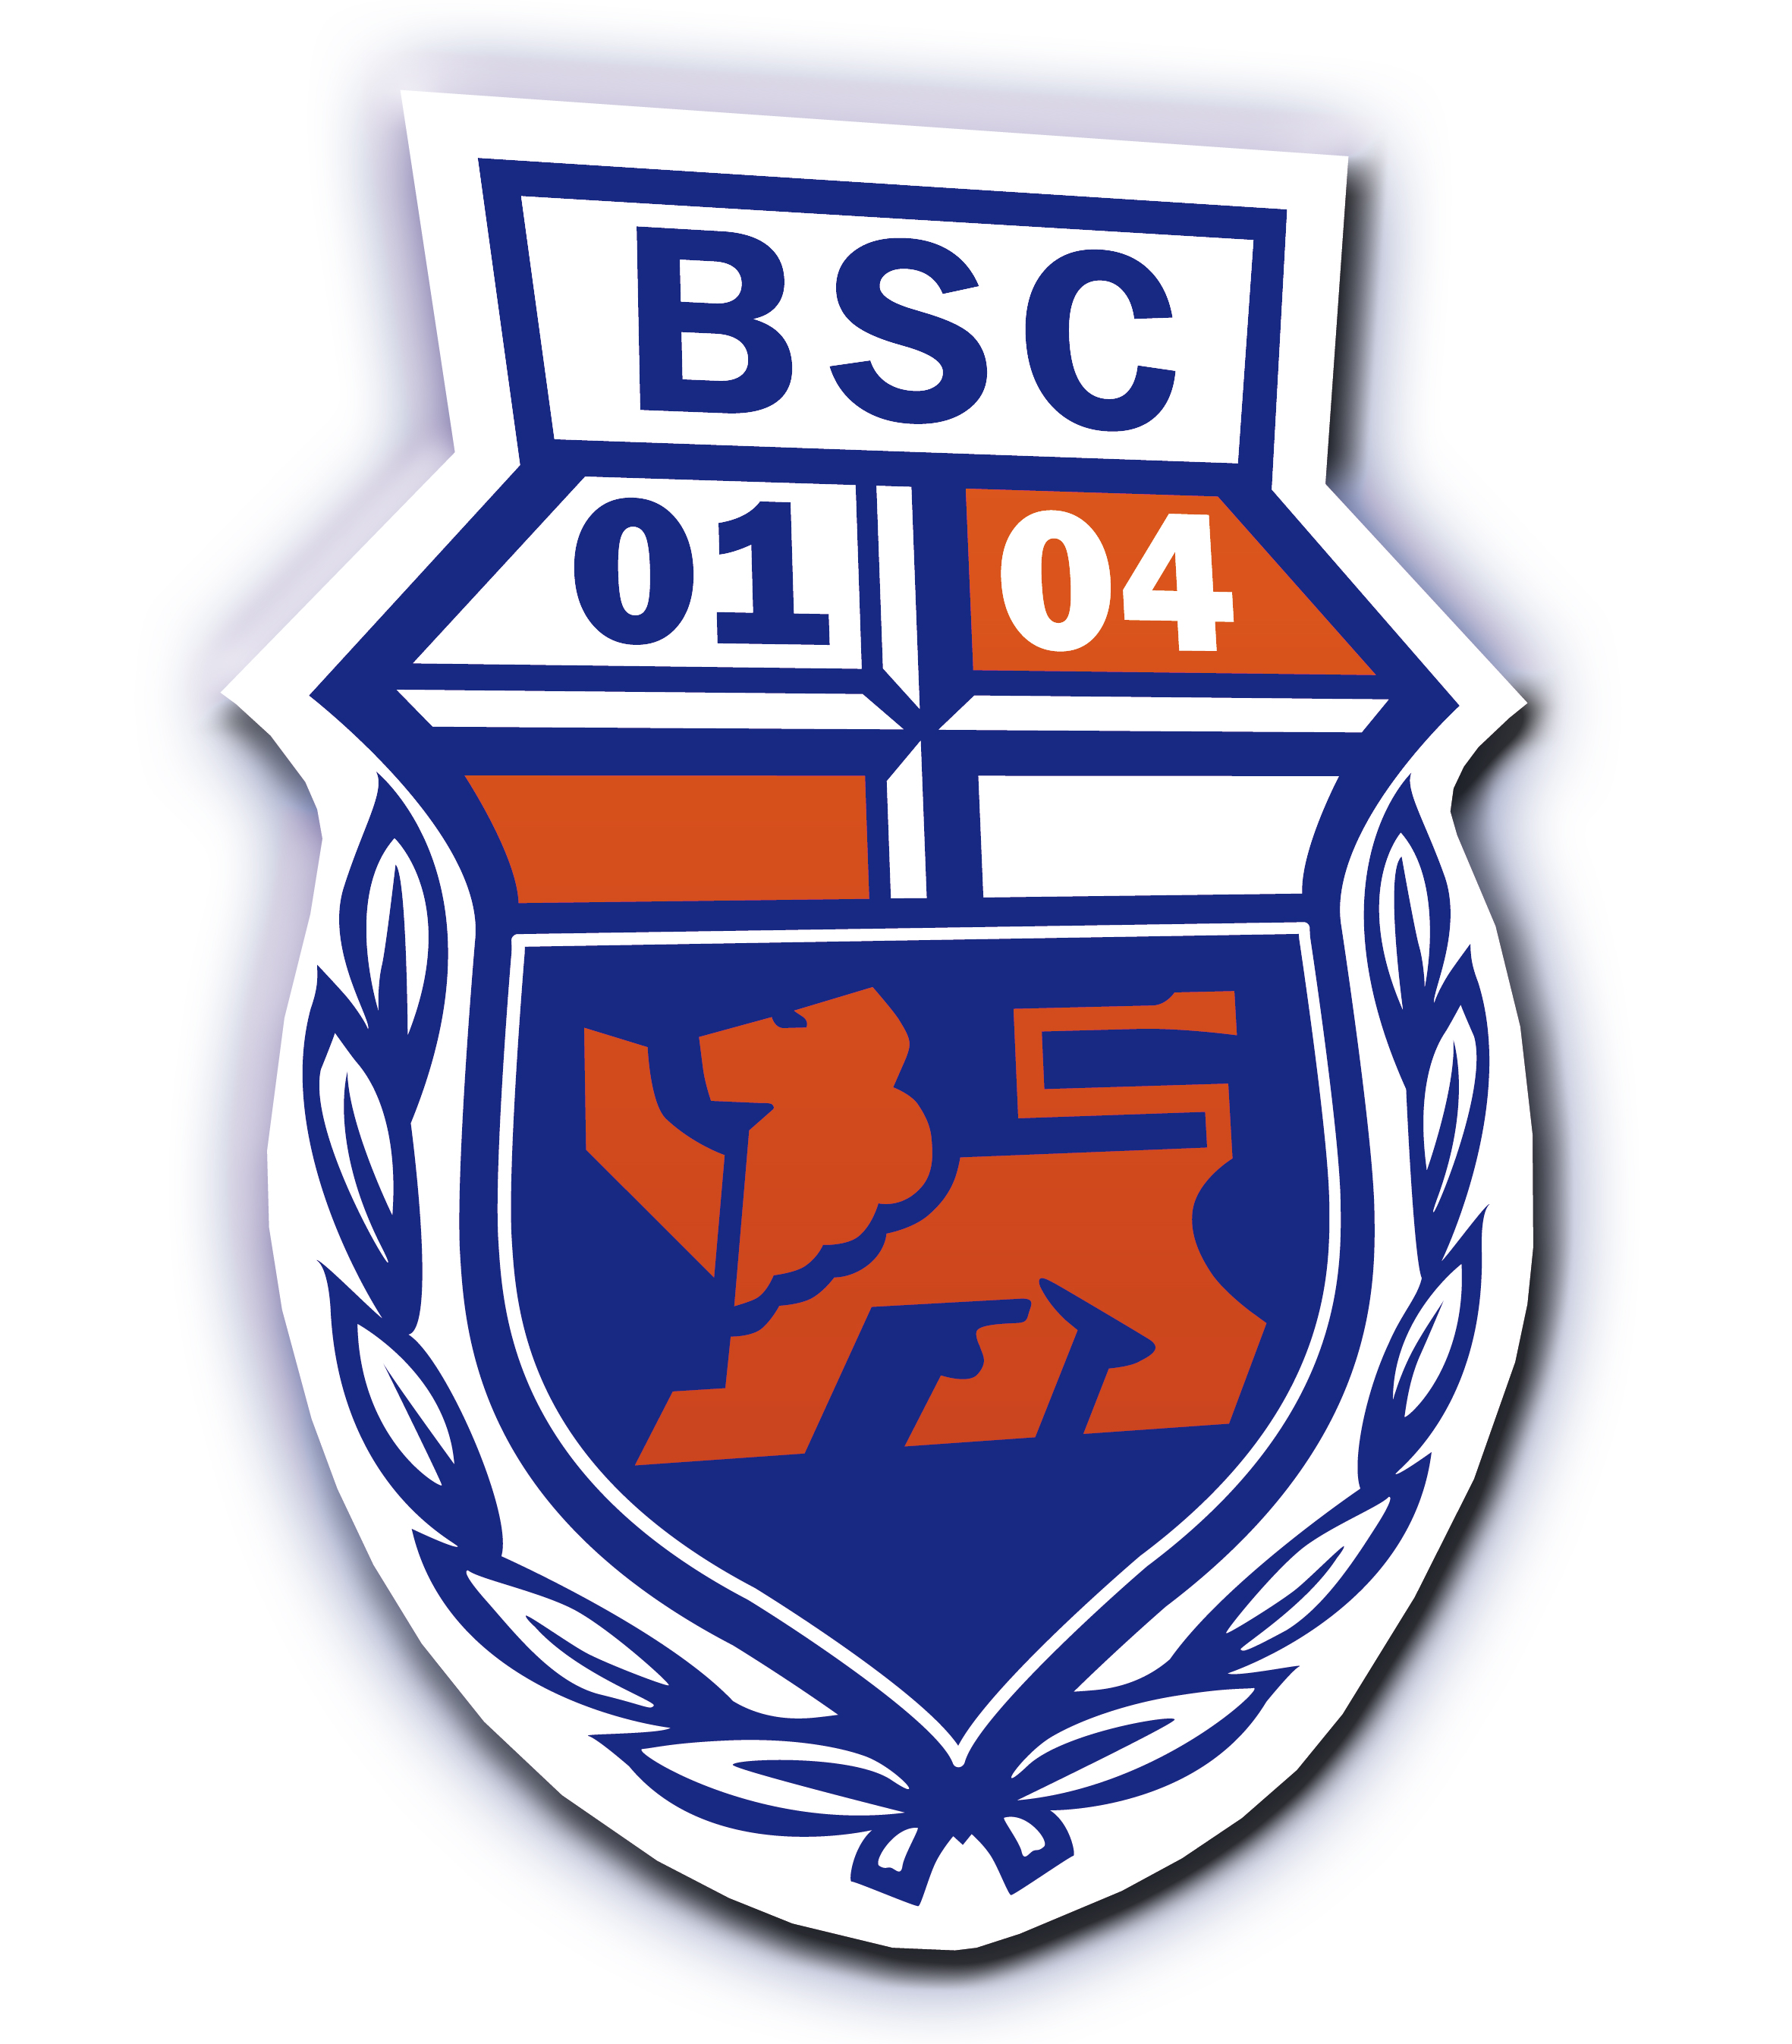 Wappen / Logo des Vereins Bonner SC 01/04